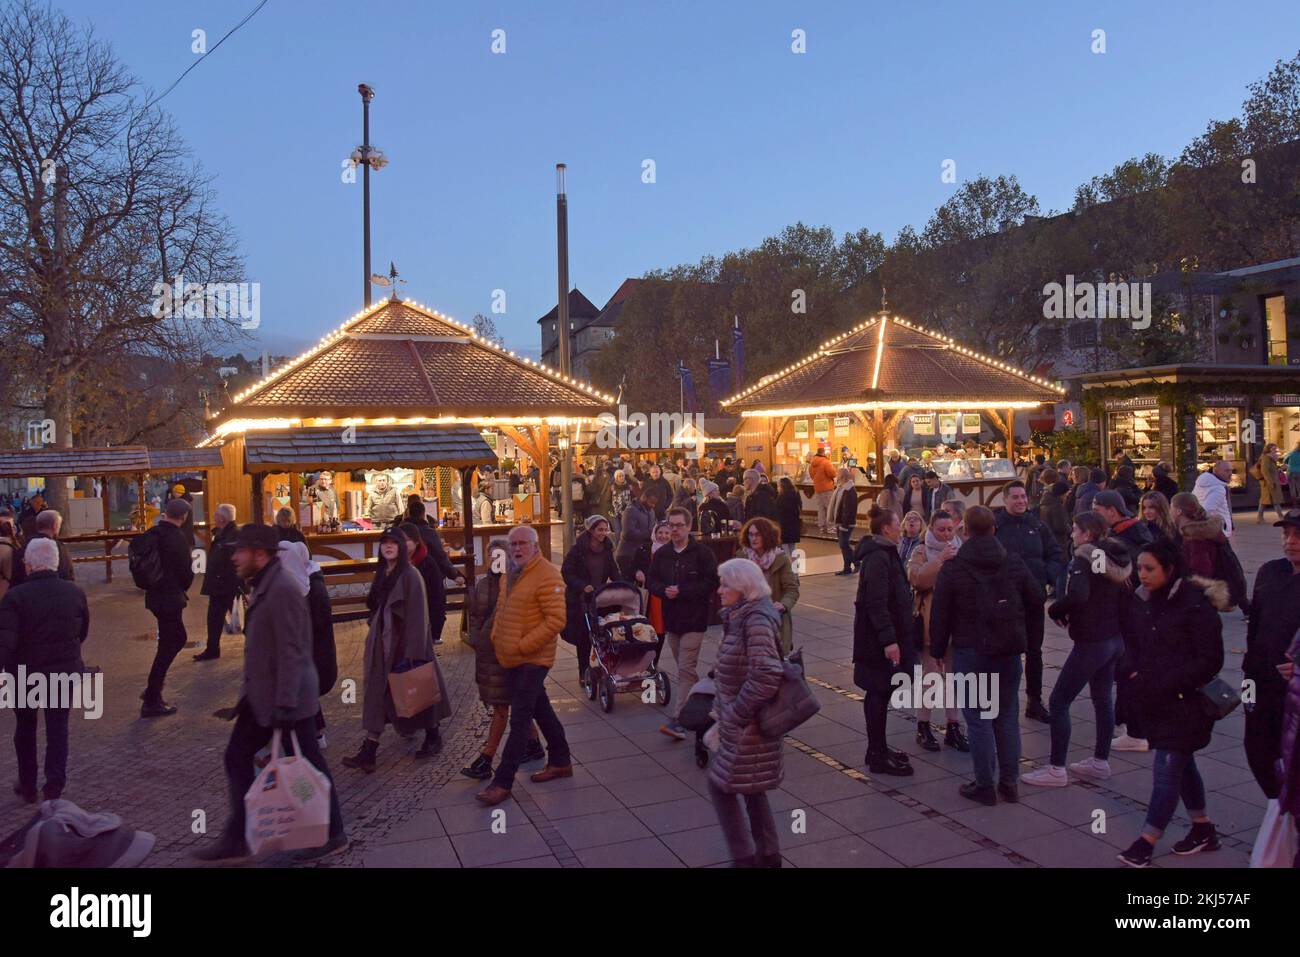 Stoccarda, Germania, 24th novembre 2022. Il mercatino di Natale di Stoccarda è aperto ai visitatori, con 200 bancarelle illuminate e decorate, una fiera e una ferrovia in miniatura. Il mercato è aperto tutti i giorni fino al 23rd dicembre. G.P.Essex/Alamy Live News Foto Stock